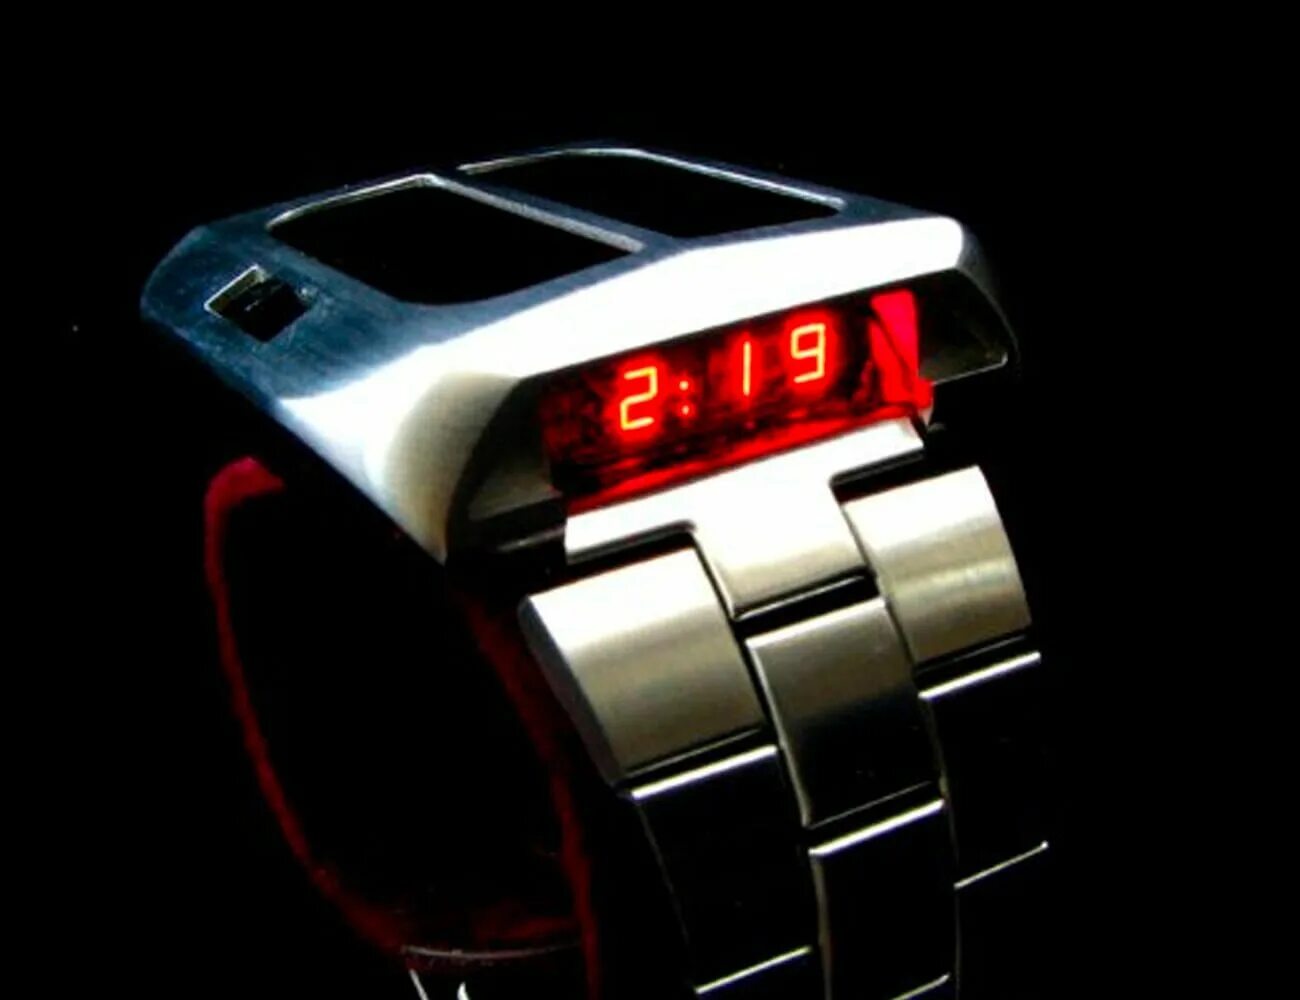 Часы led watch. Светодиодные часы лед вотч модель 1354. Synchronar 2100. Synchronar 2100 buy.